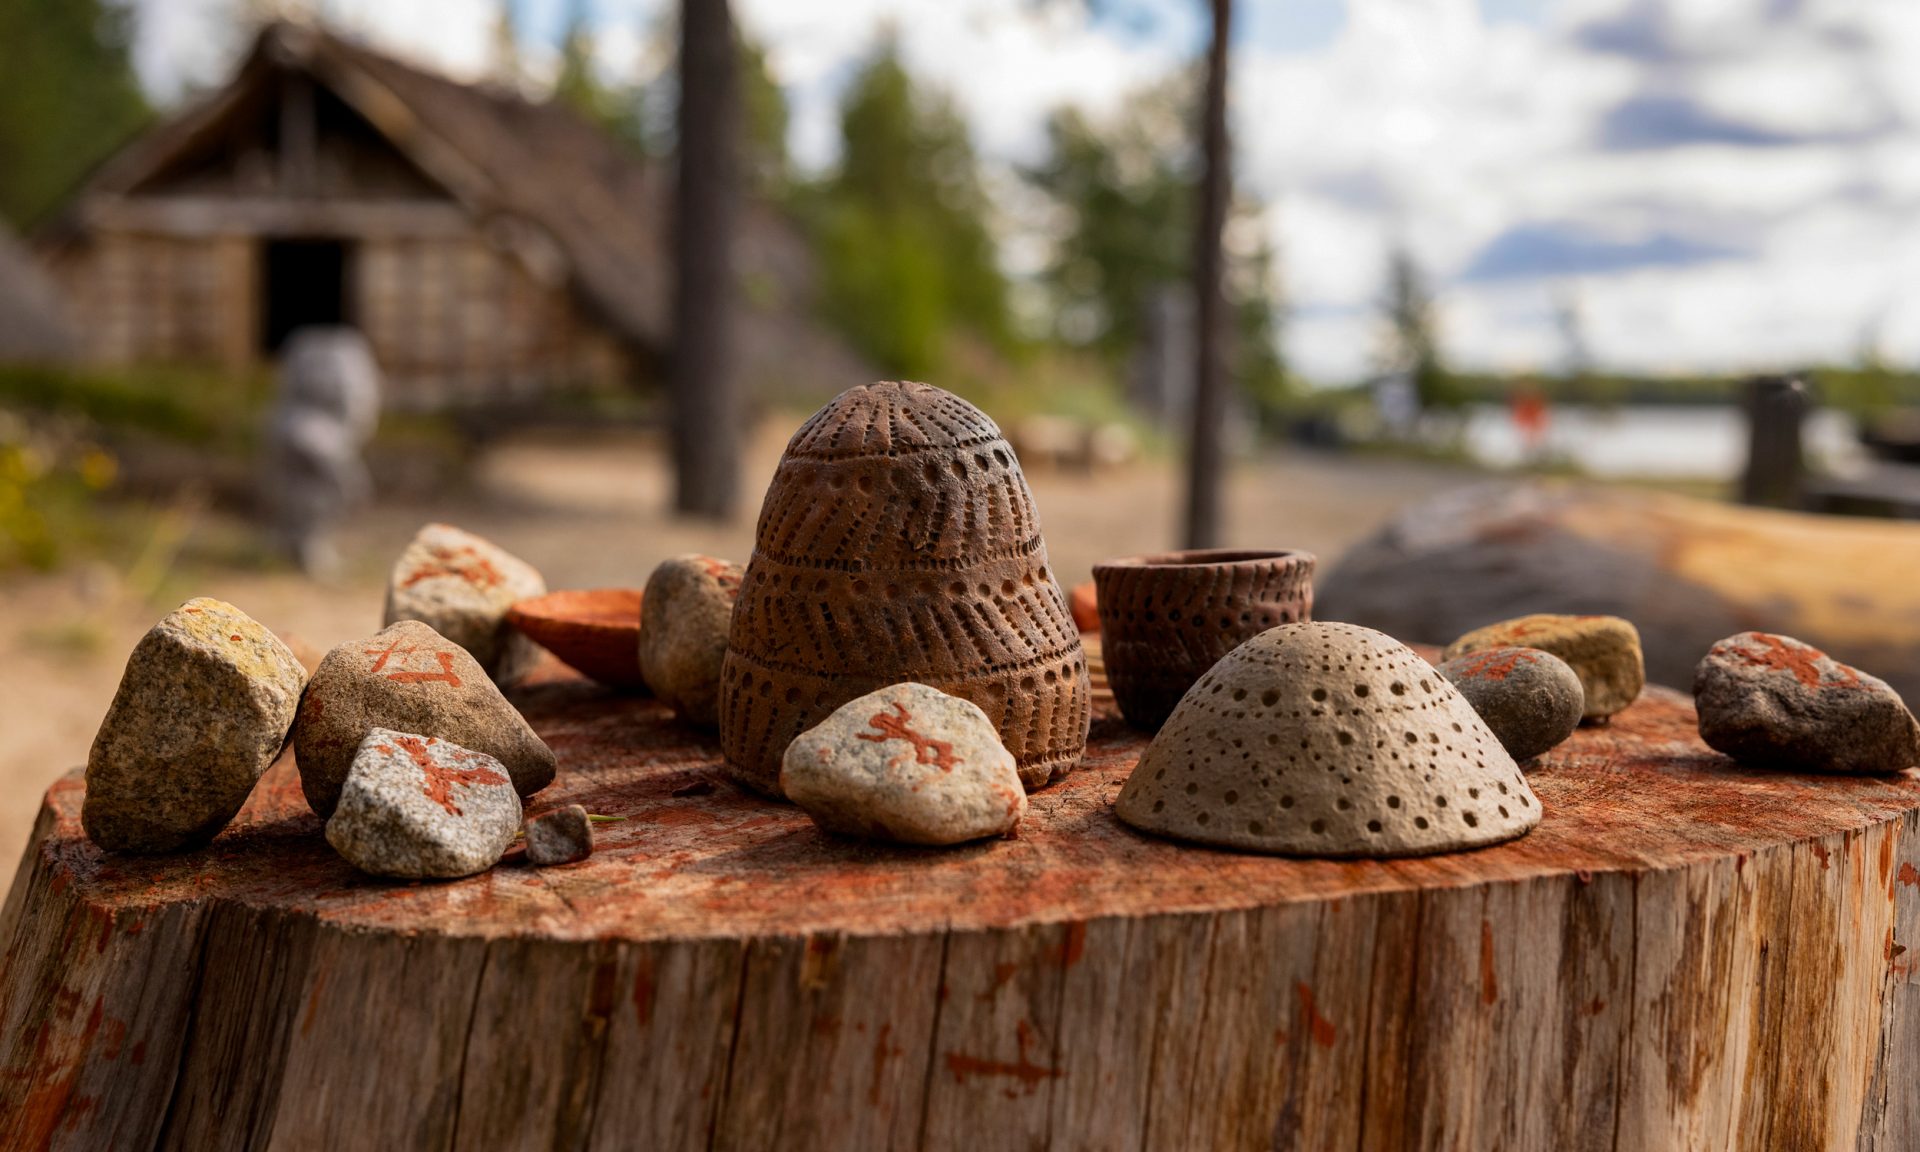 Kiviä ja keramiikkaesineitä aseteltuna suuren kannon päälle kivikauden kylässä. Kiviin on maalattu kuvioita punamultamaalilla.